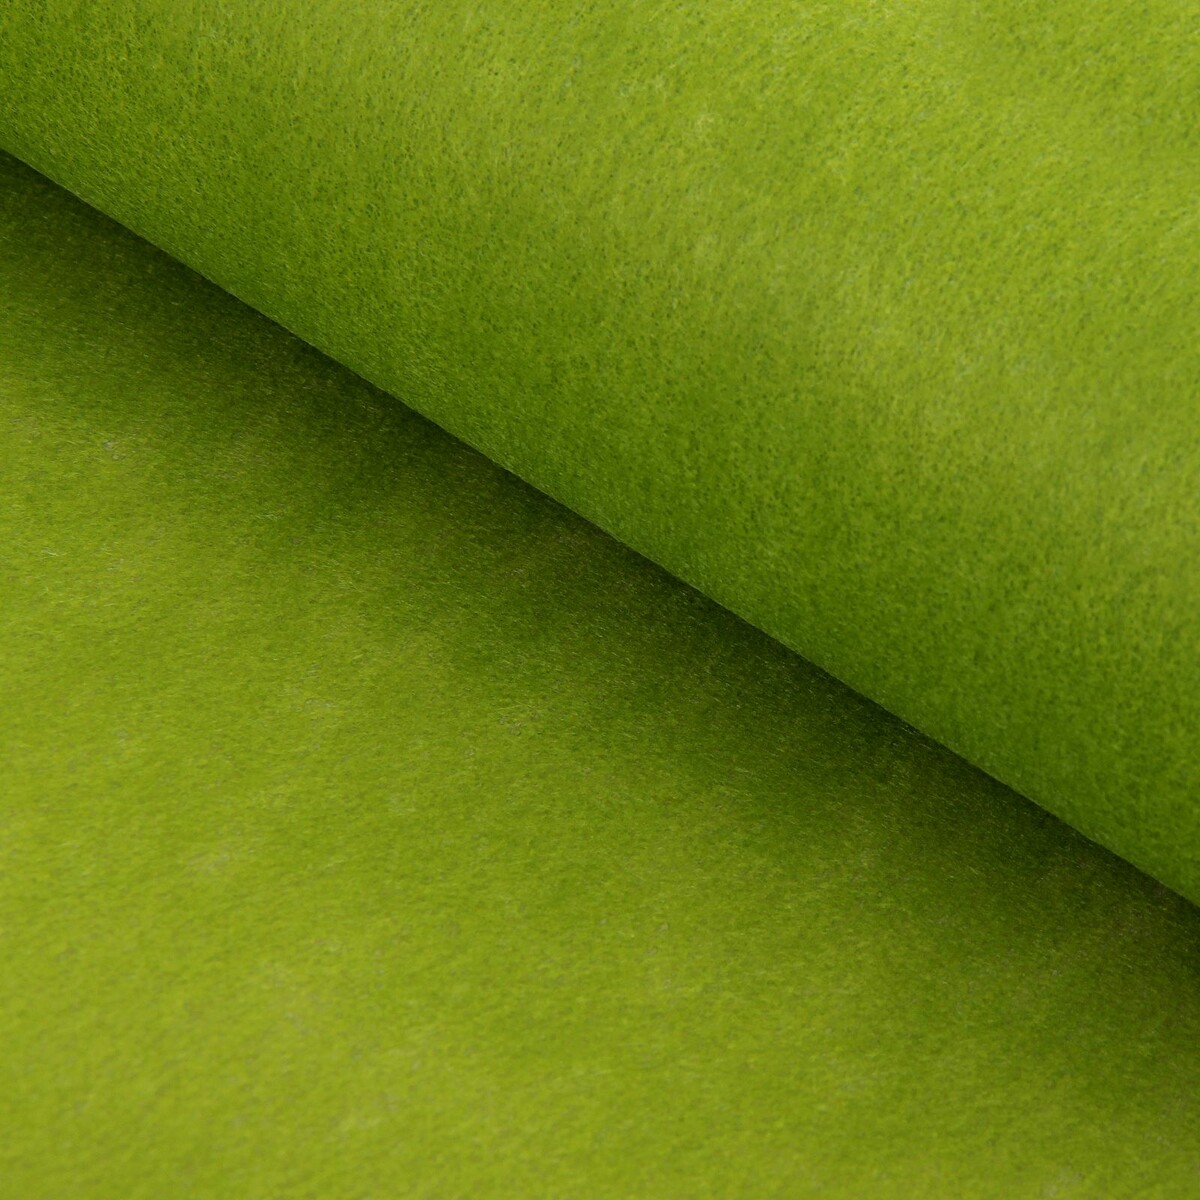 Фетр для упаковок и поделок, однотонный, оливковый, двусторонний, зеленый, рулон 1шт., 50 см x 15 м мяч для художественной гимнастики однотонный d15см зеленый